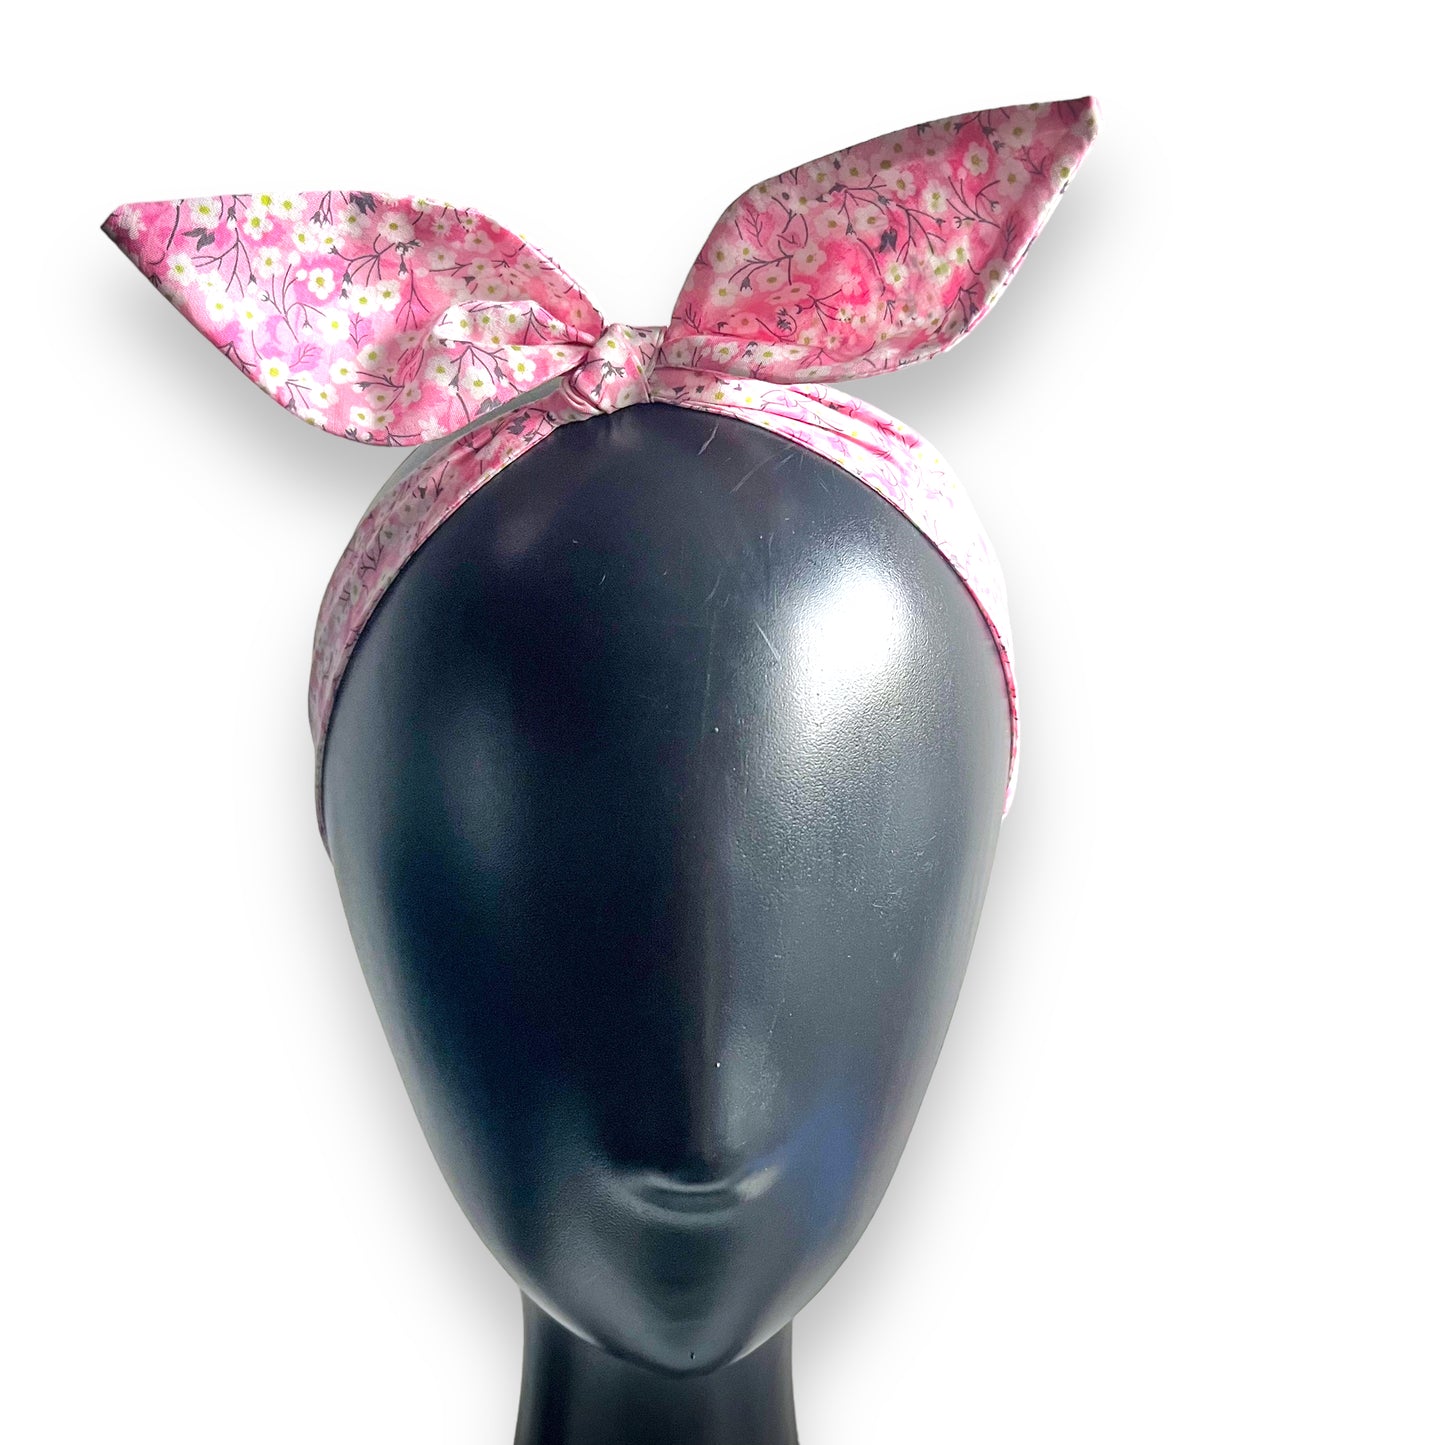 Soft Knotted Hairband - Liberty Mitsi Pink